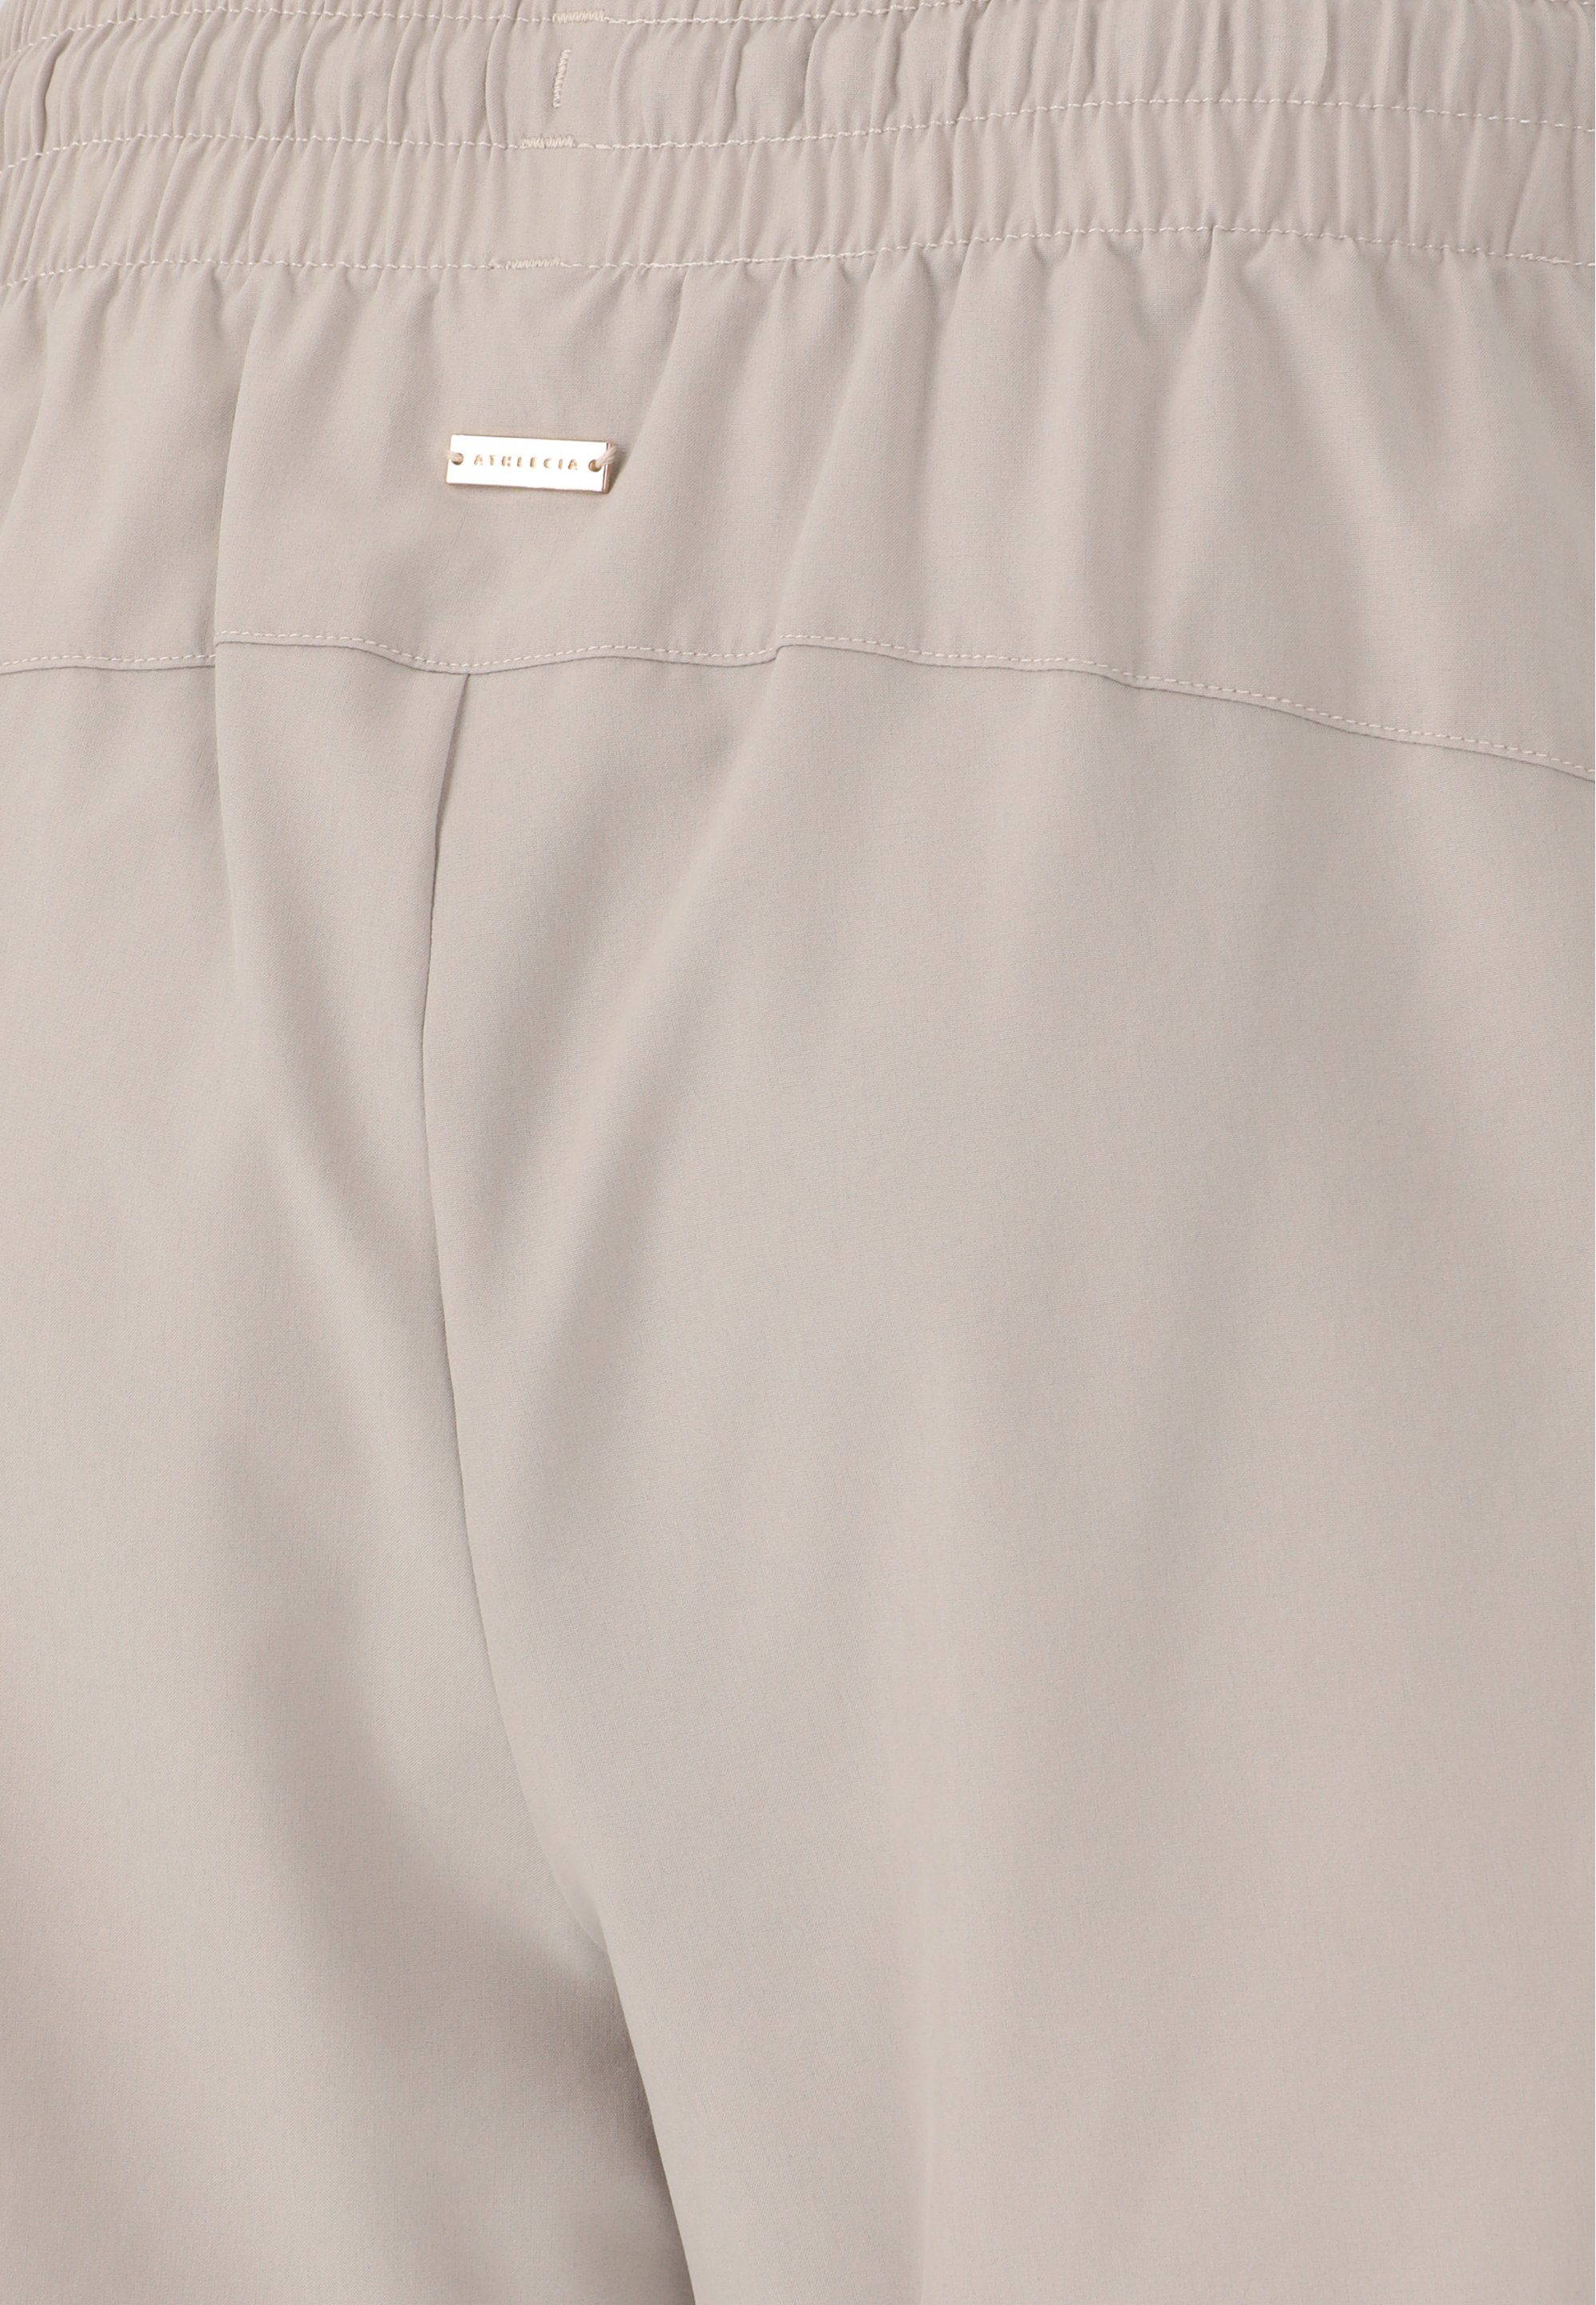 ATHLECIA Shorts praktischen mit Timmie grau Seitentaschen